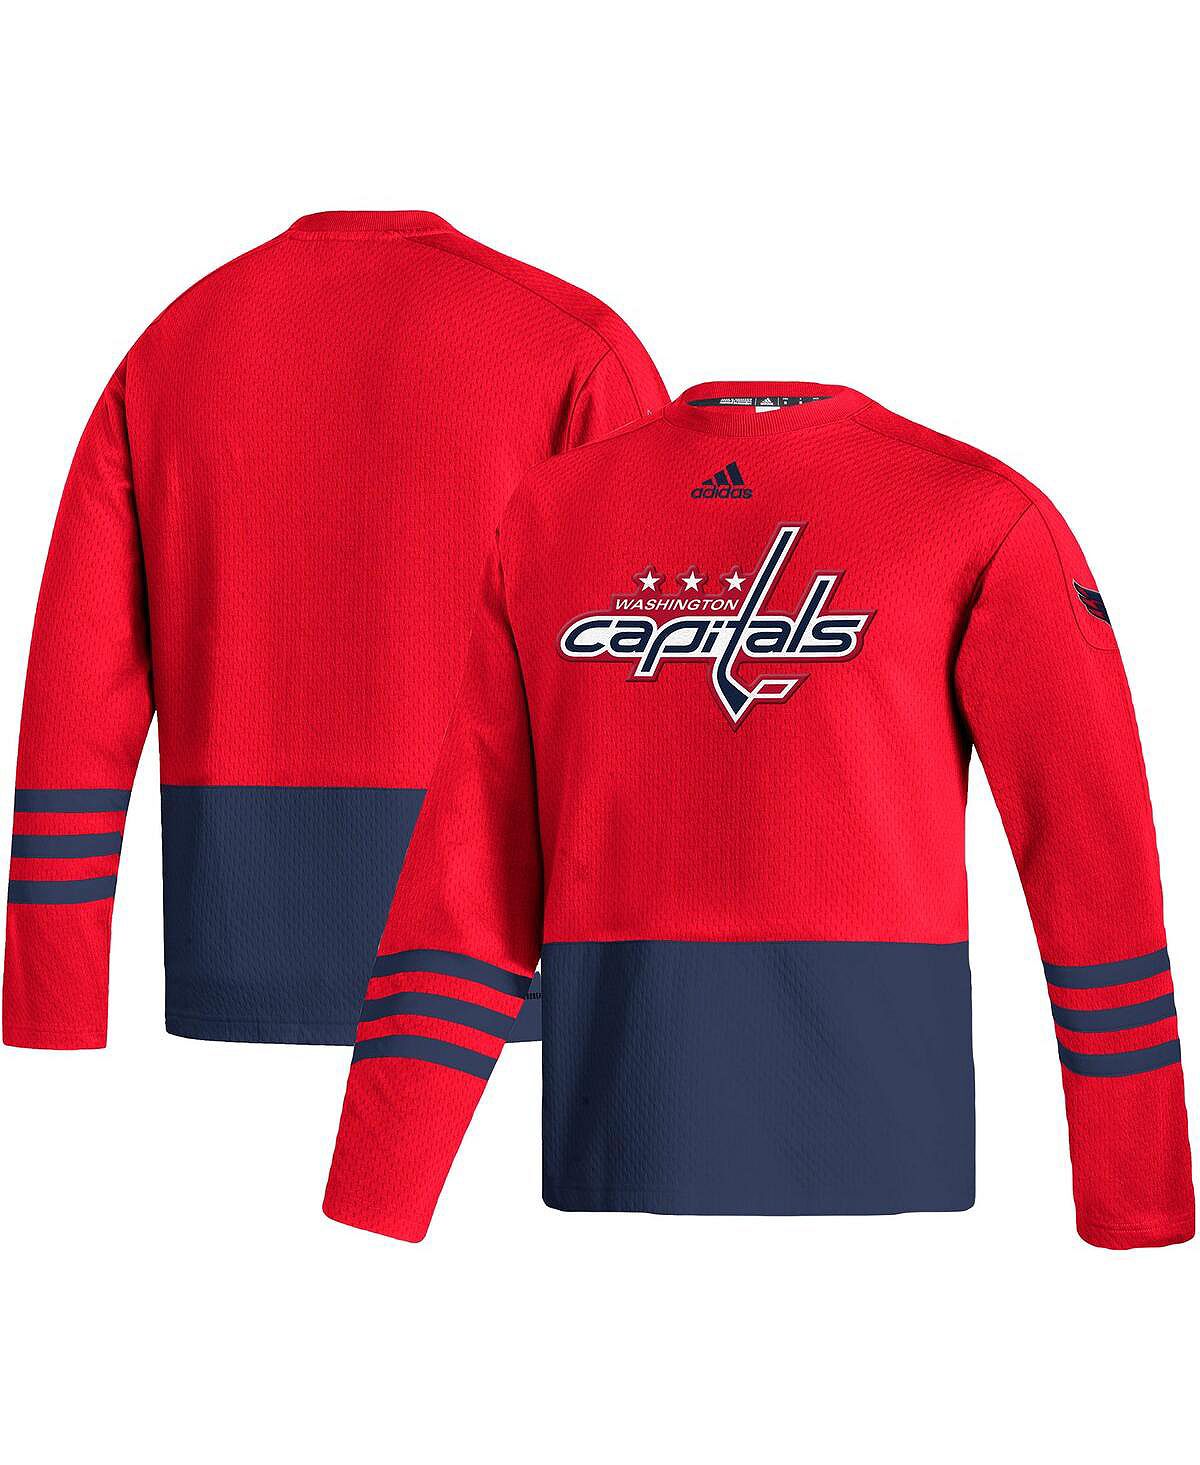 Мужской красный пуловер с логотипом washington capitals aeroready adidas, красный бейсболка вашингтон кэпиталз